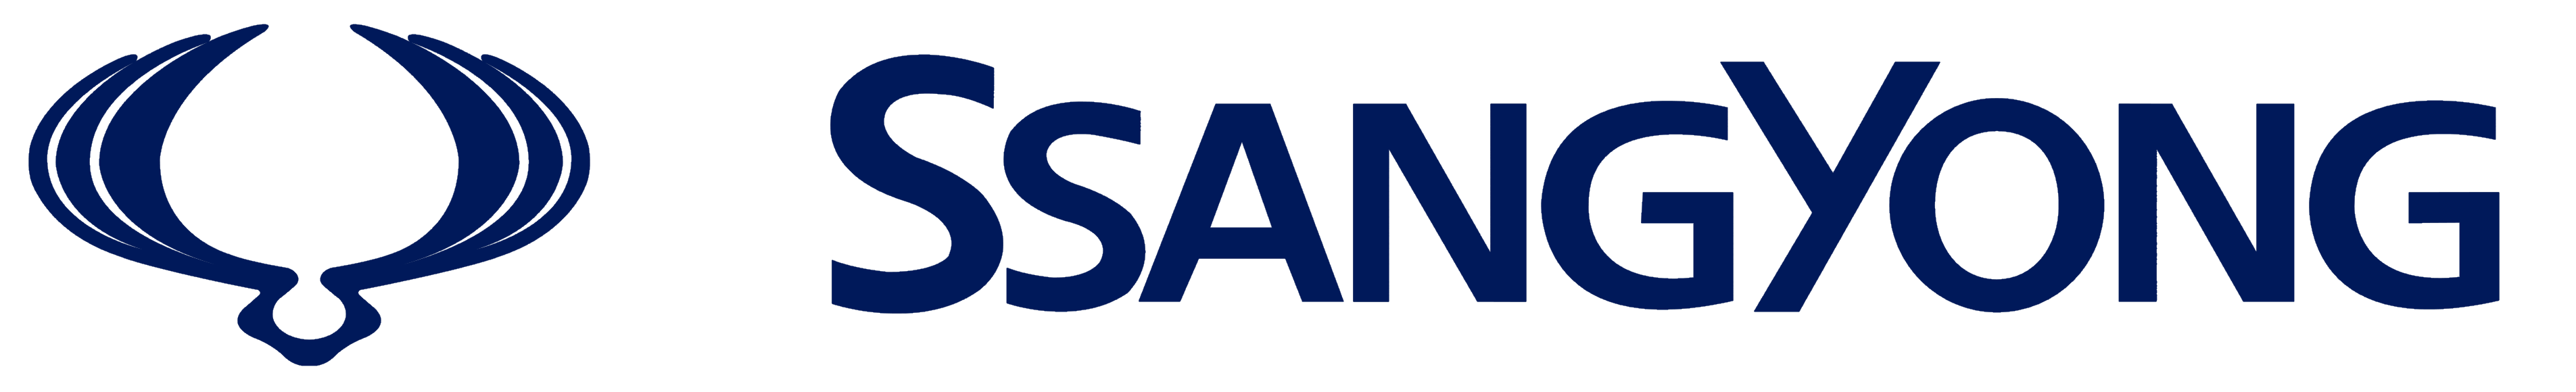 SsangYong logo, logotype